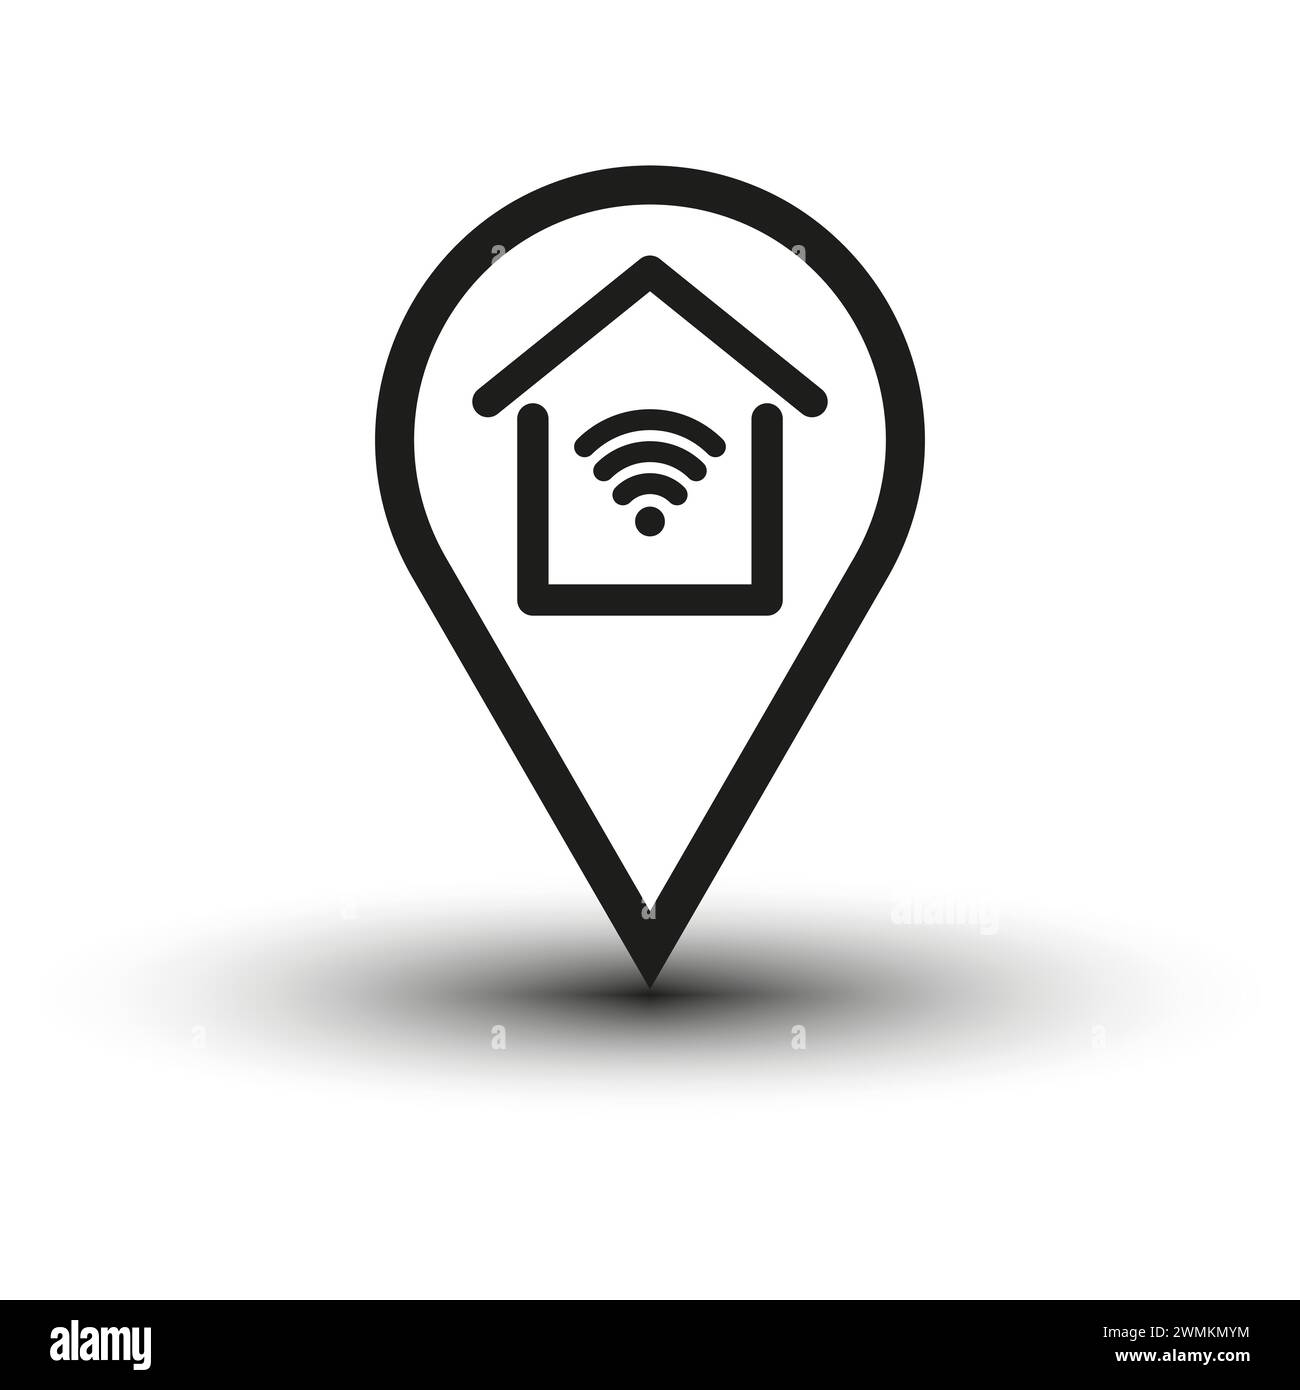 Pin Smart Home, simbolo wireless. Icona di accesso remoto alla casa. Illustrazione vettoriale. EPS 10. Illustrazione Vettoriale